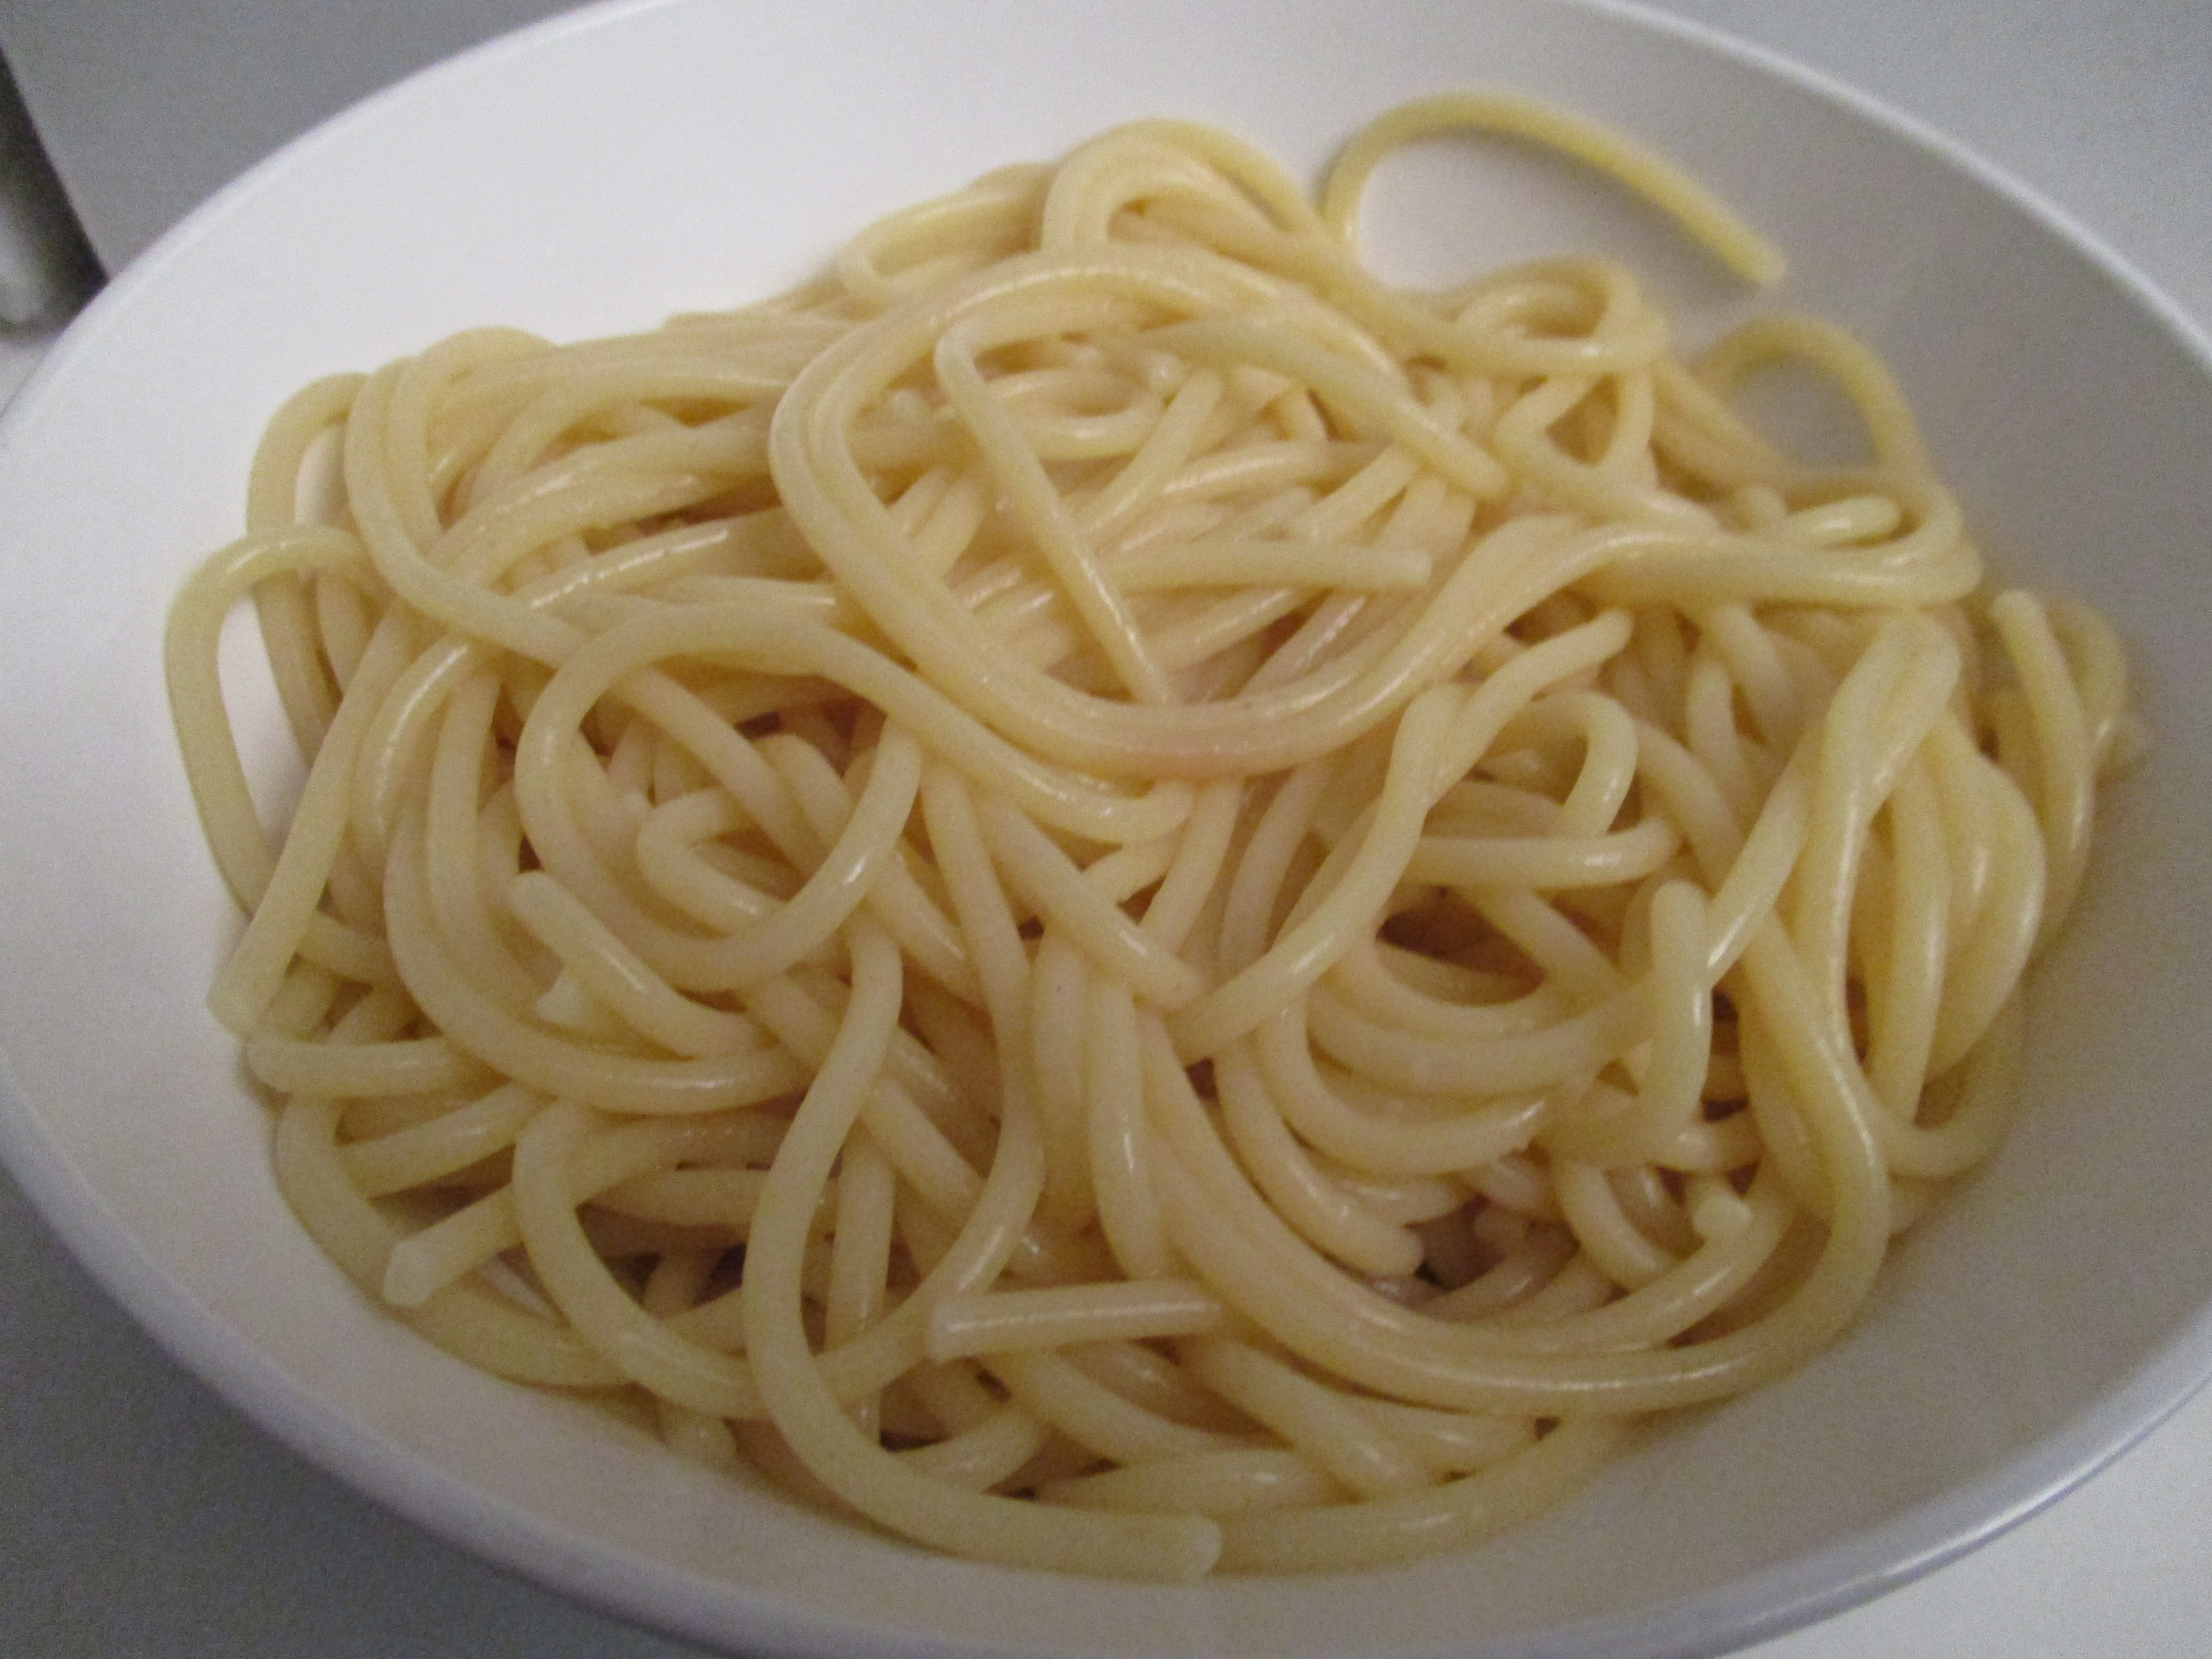 Спагетти вареные